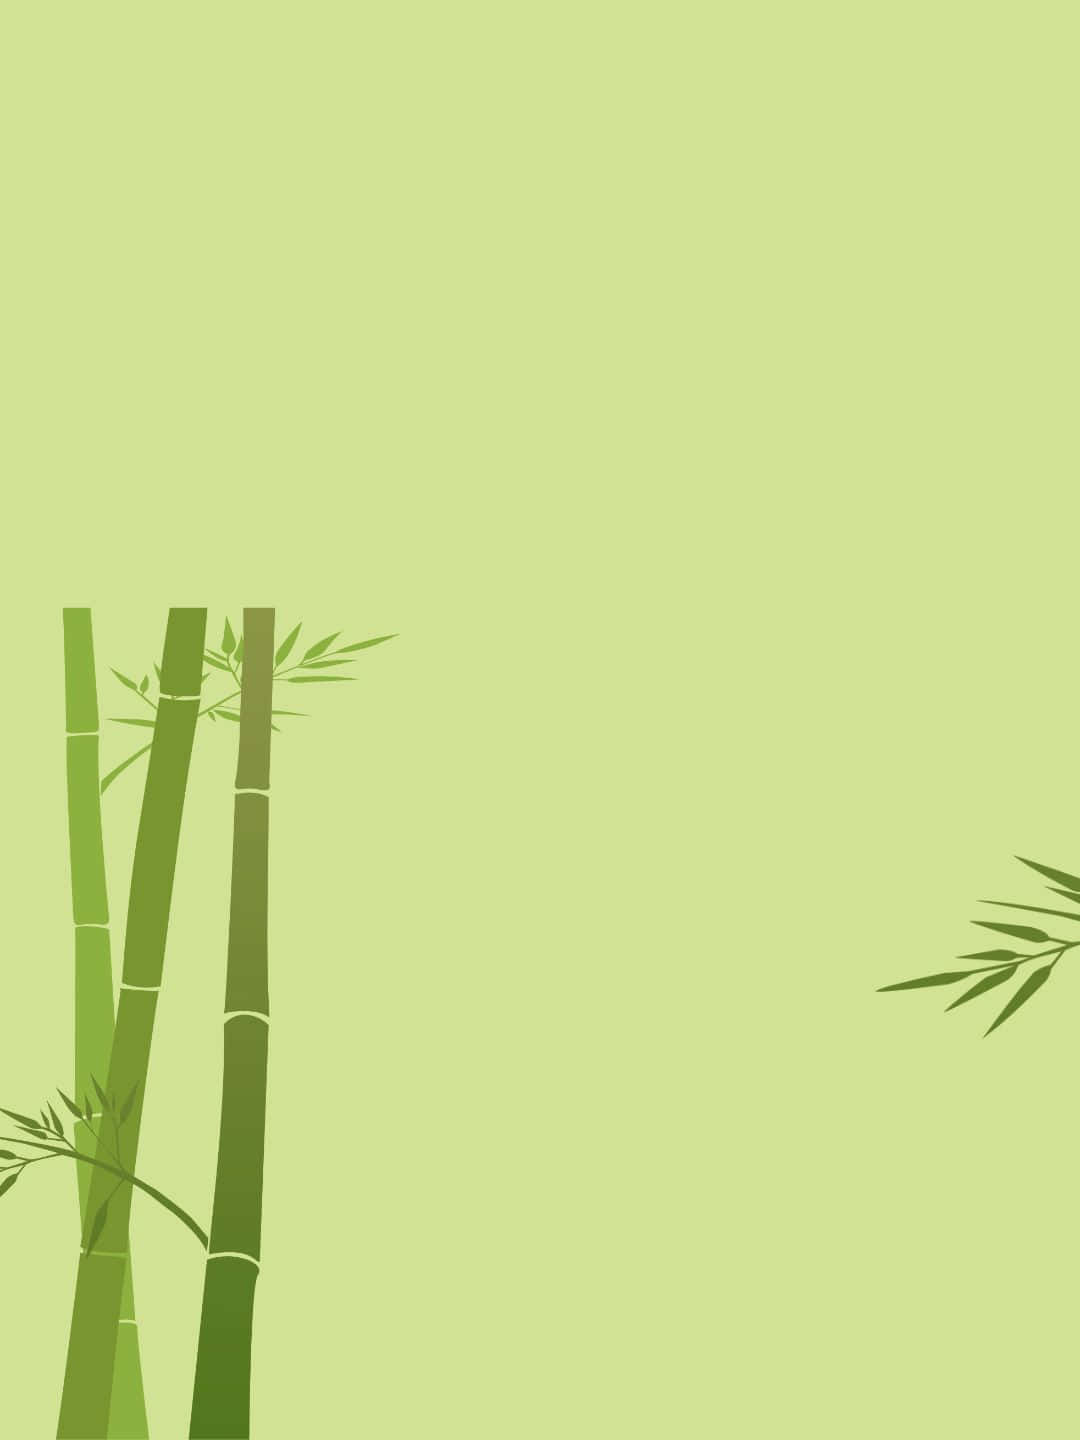 Fondode Pantalla De Bambú En 1440p, Con Un Dibujo Recortado De Árboles De Bambú.